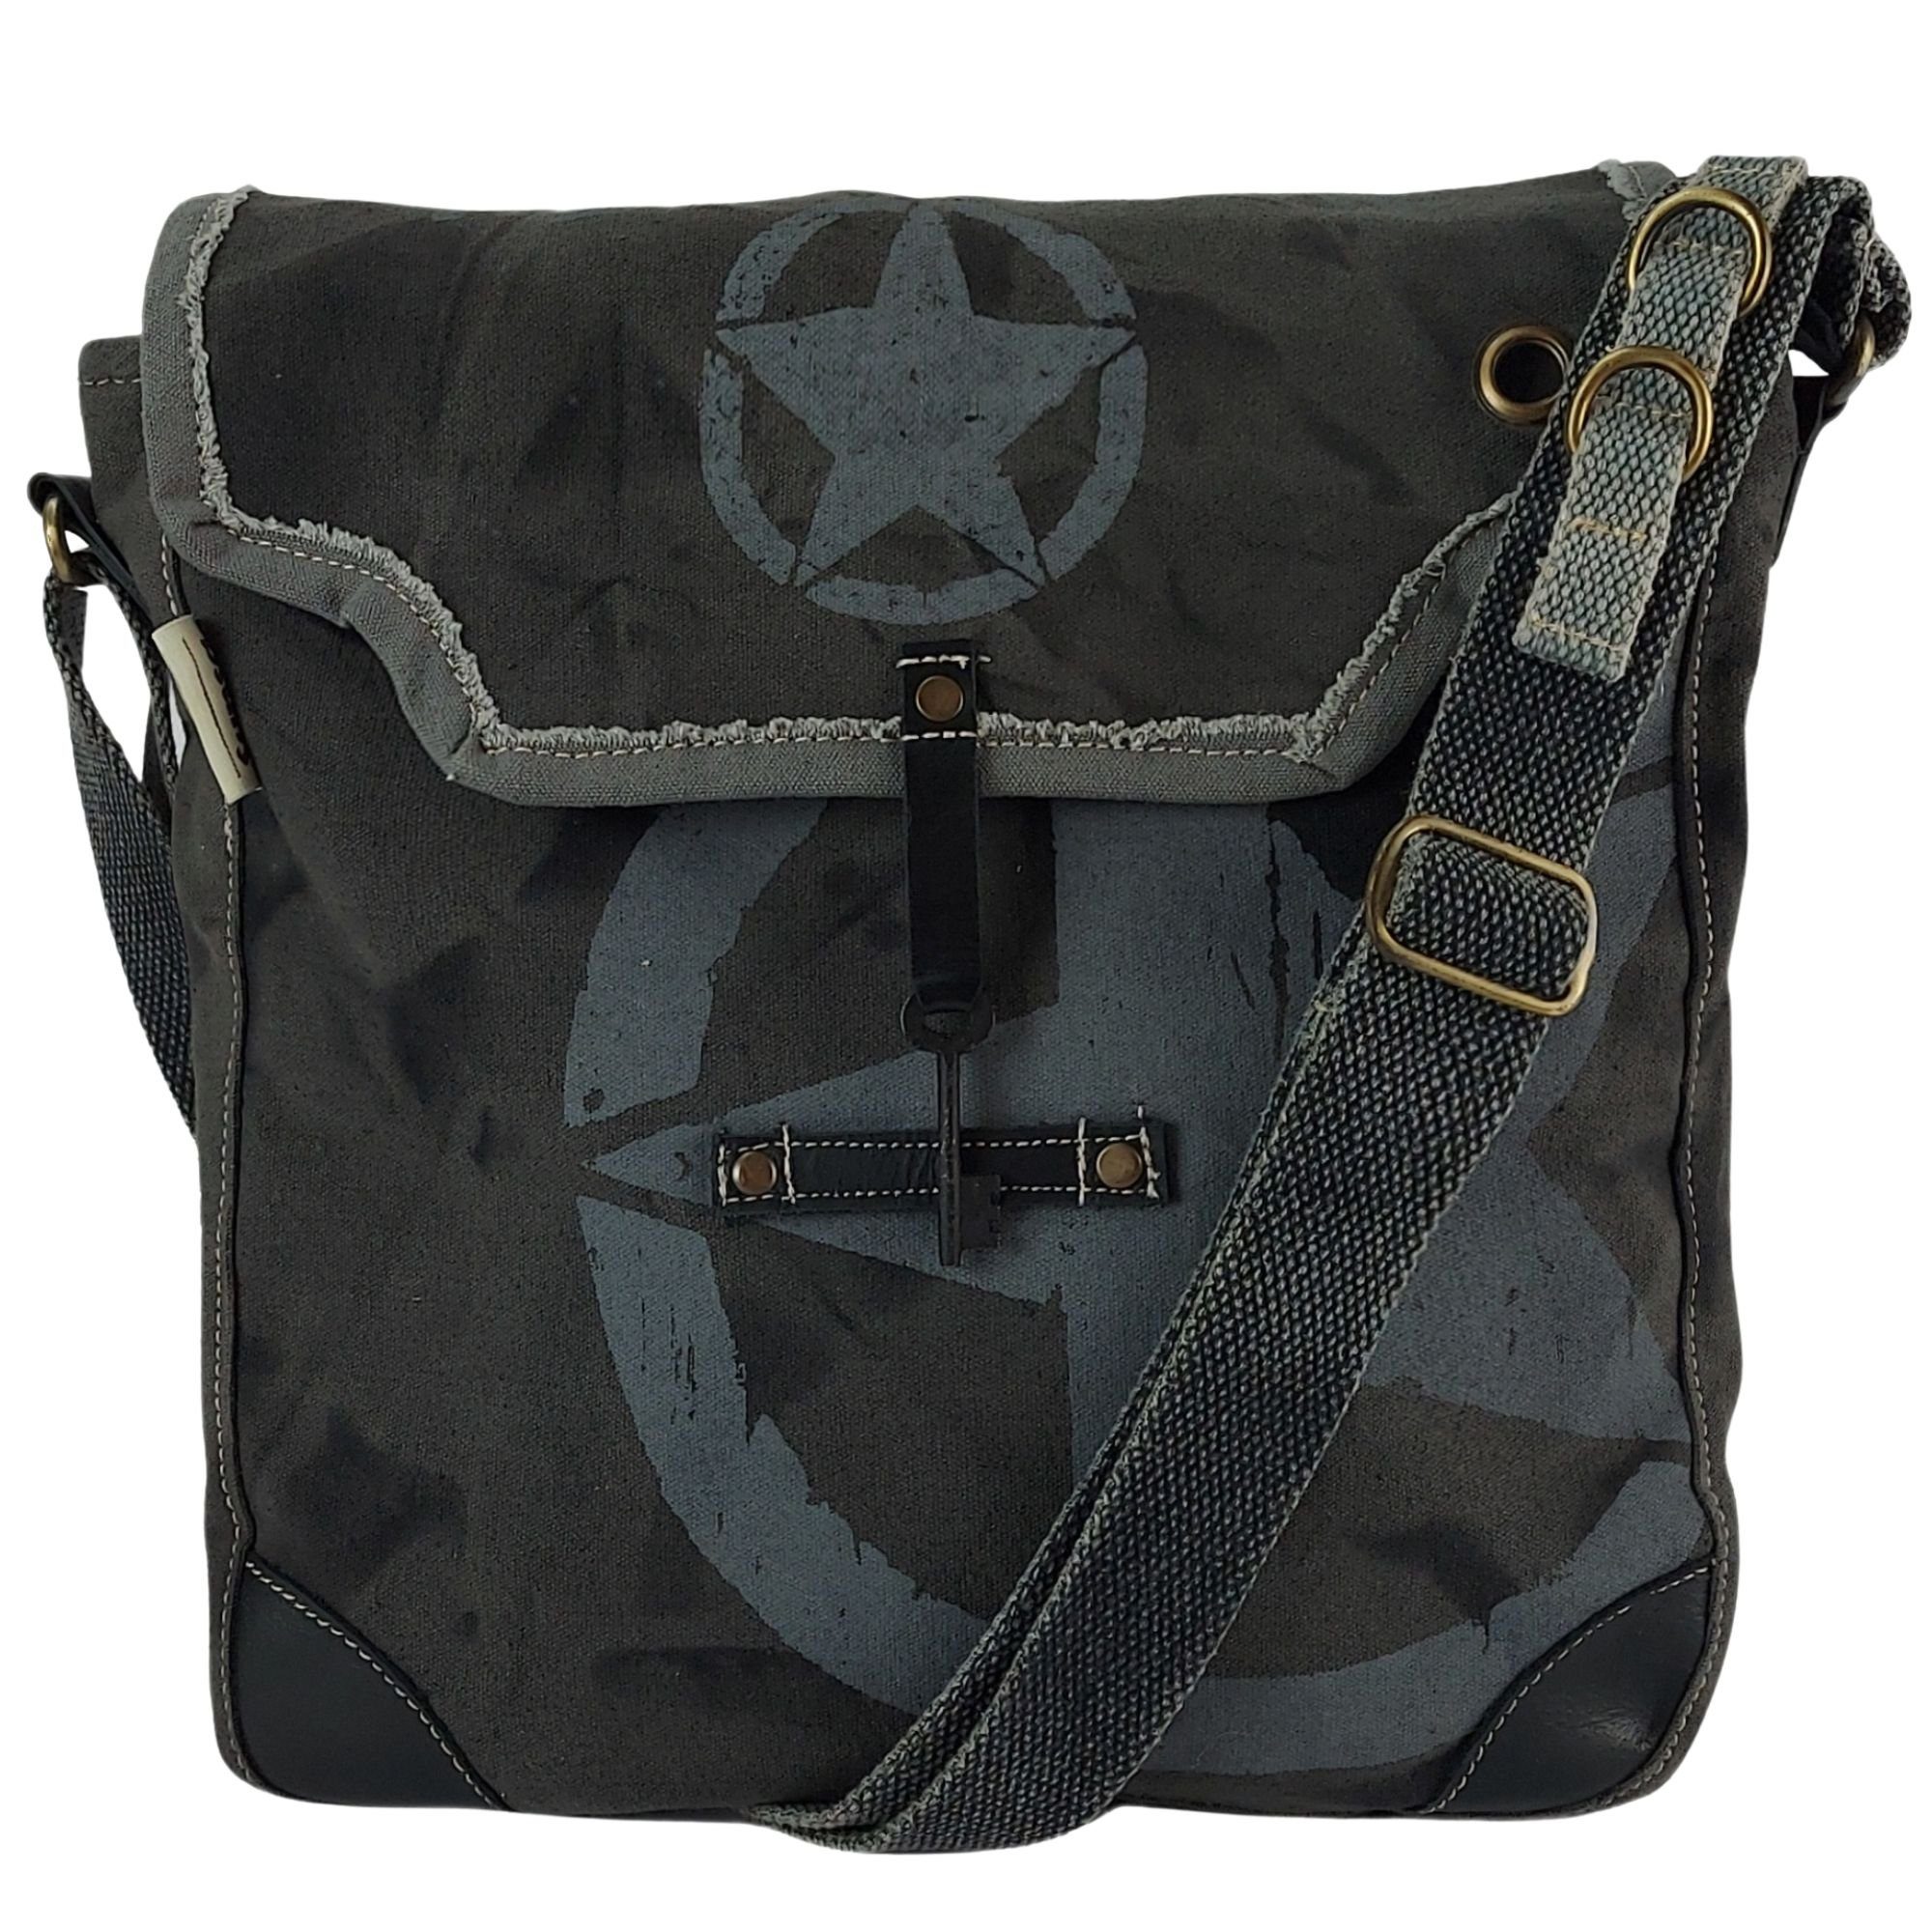 Sunsa Messenger Bag Schwarze Umhängetasche große Vintage Crossbody Tasche Schultertasche, echt Leder, Stern Aufdruck | Canvas-Taschen